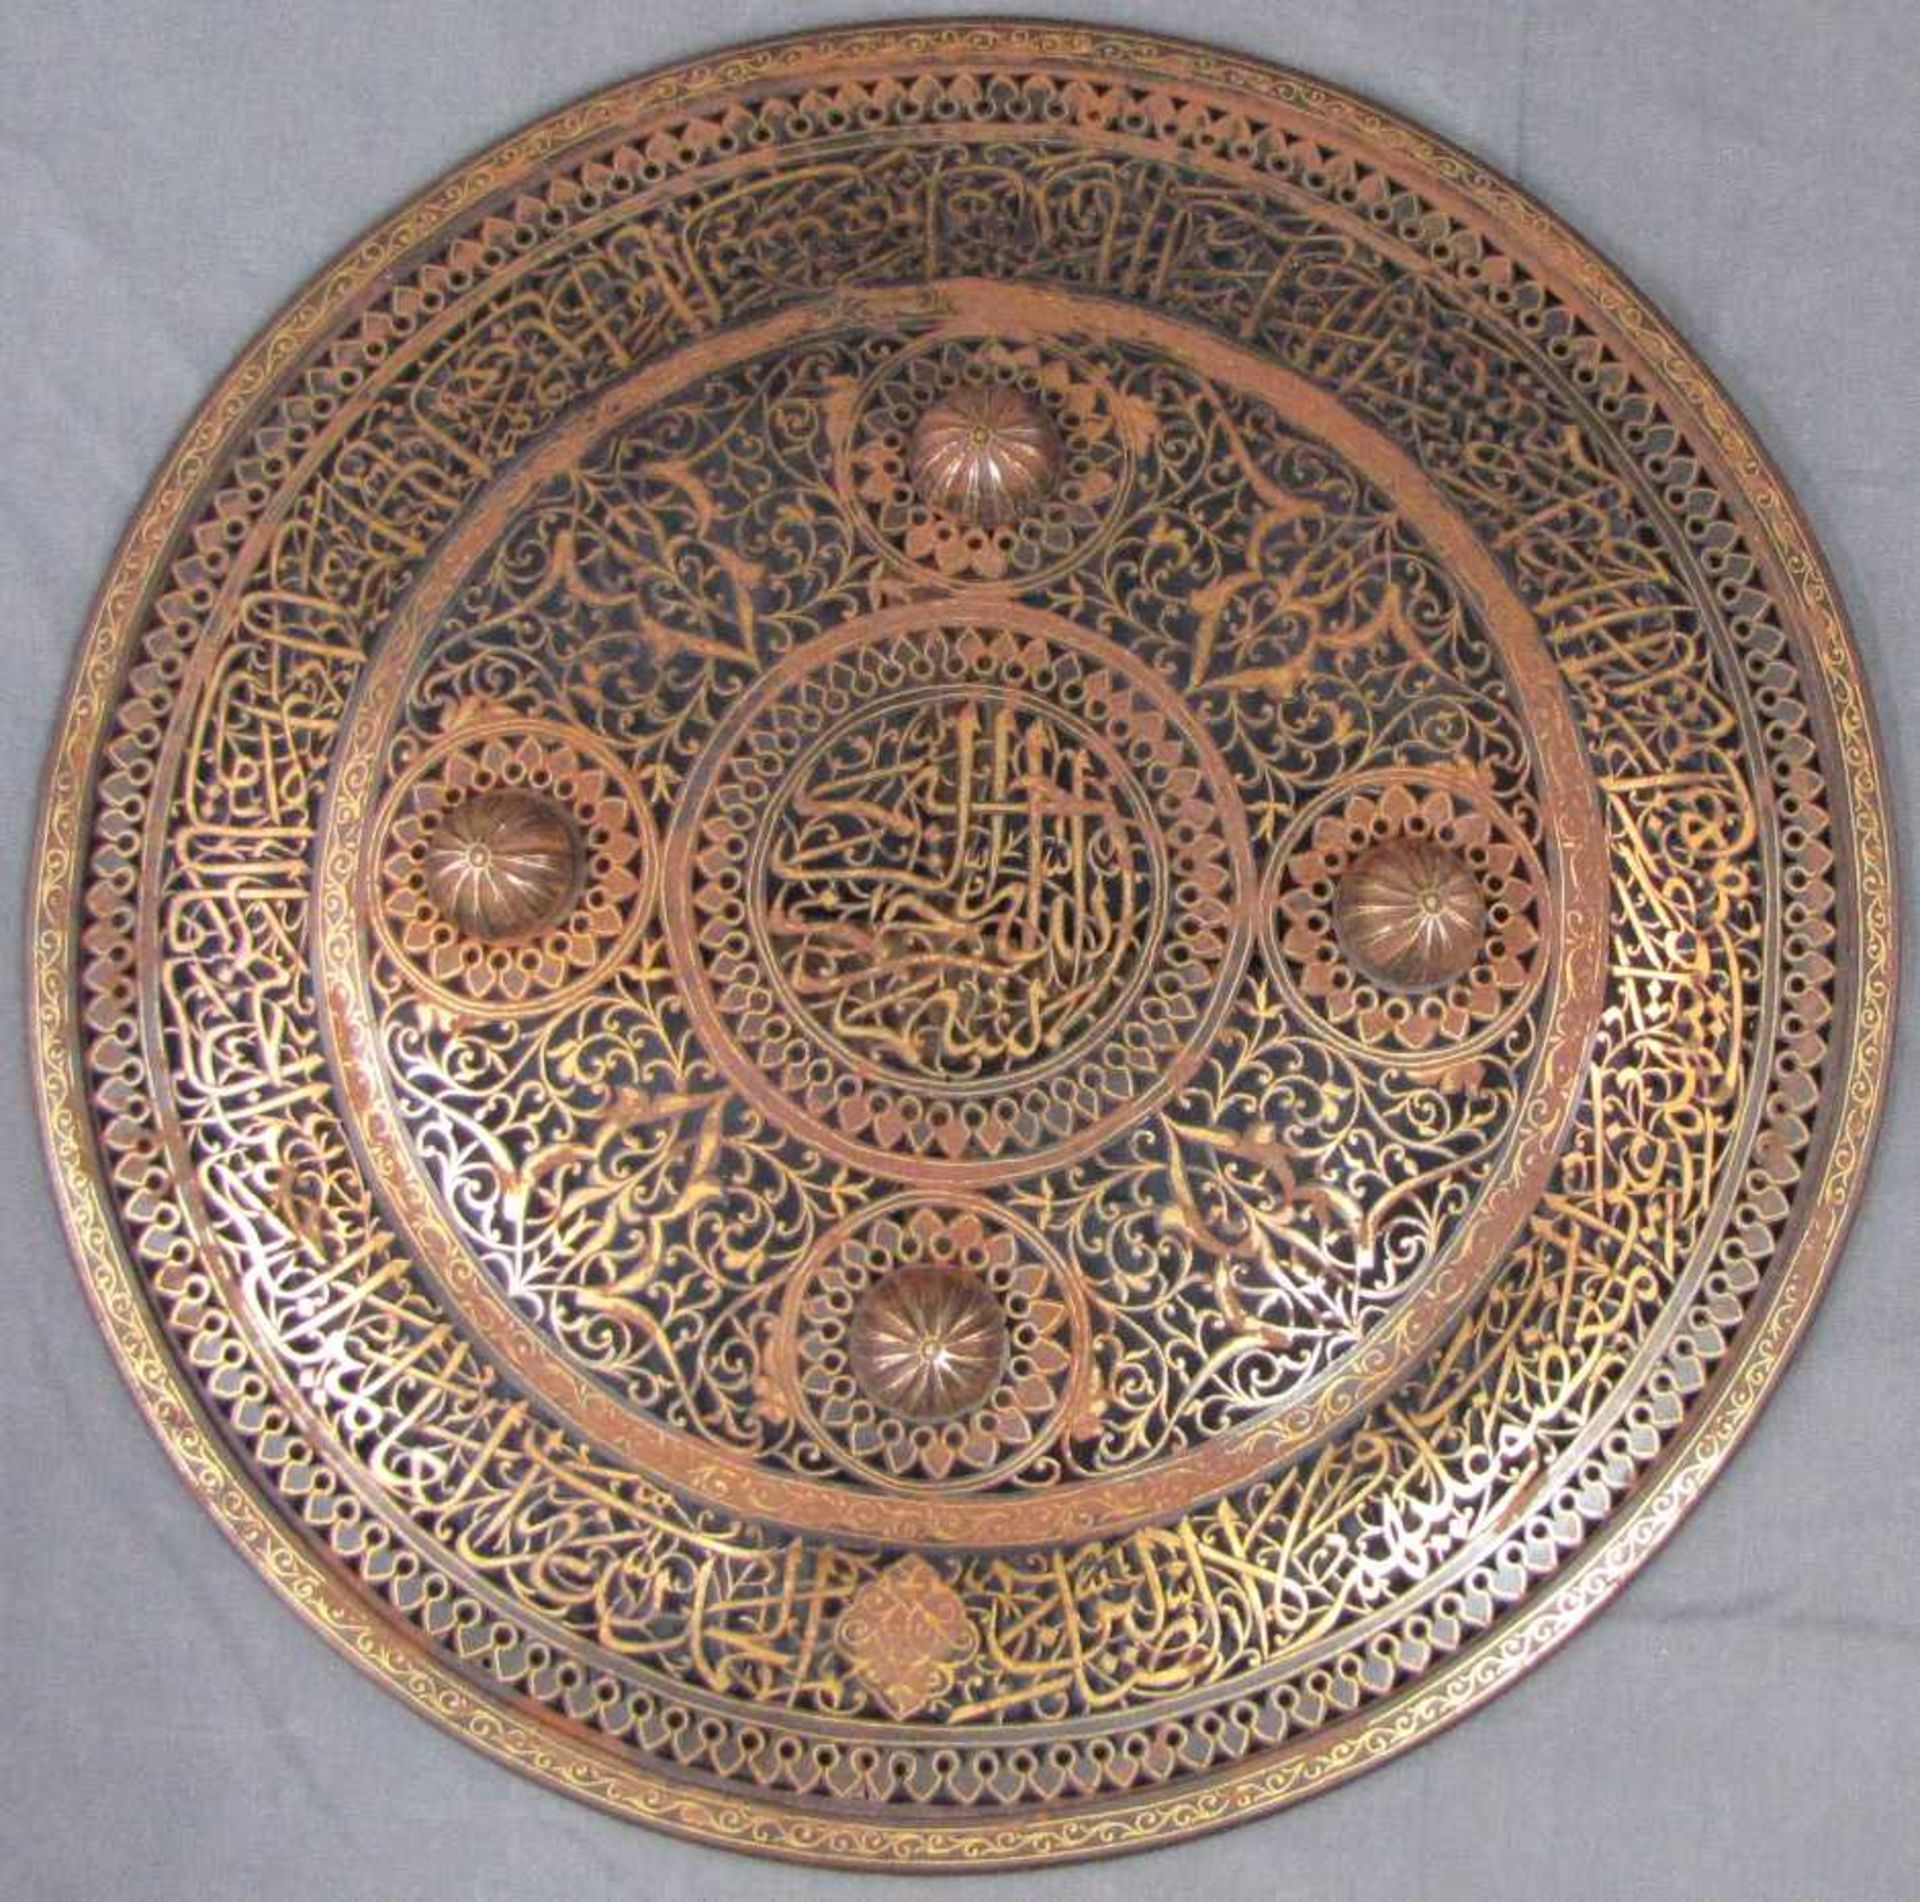 Schild mit Tughra eines Sultans, wohl Osmanisches Reich 18. Jahrhundert. Durchmesser 38 cm. Stahl,